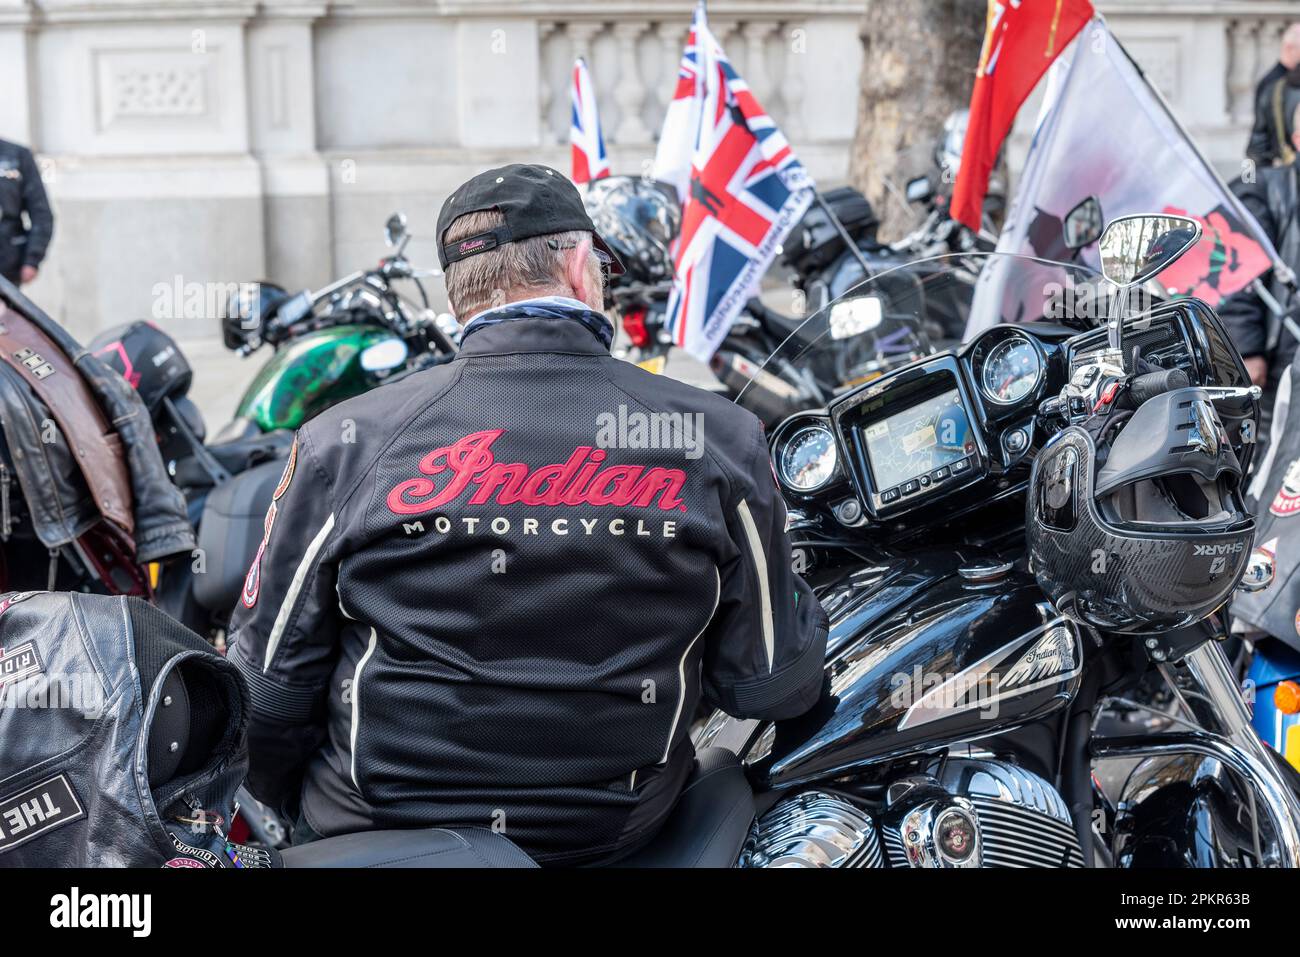 Promenade de respect à la mémoire de la Reine Elizabeth II par les vétérans de l'armée motocyclistes de Rolling Thunder, qui font également campagne pour protéger les anciens combattants Banque D'Images